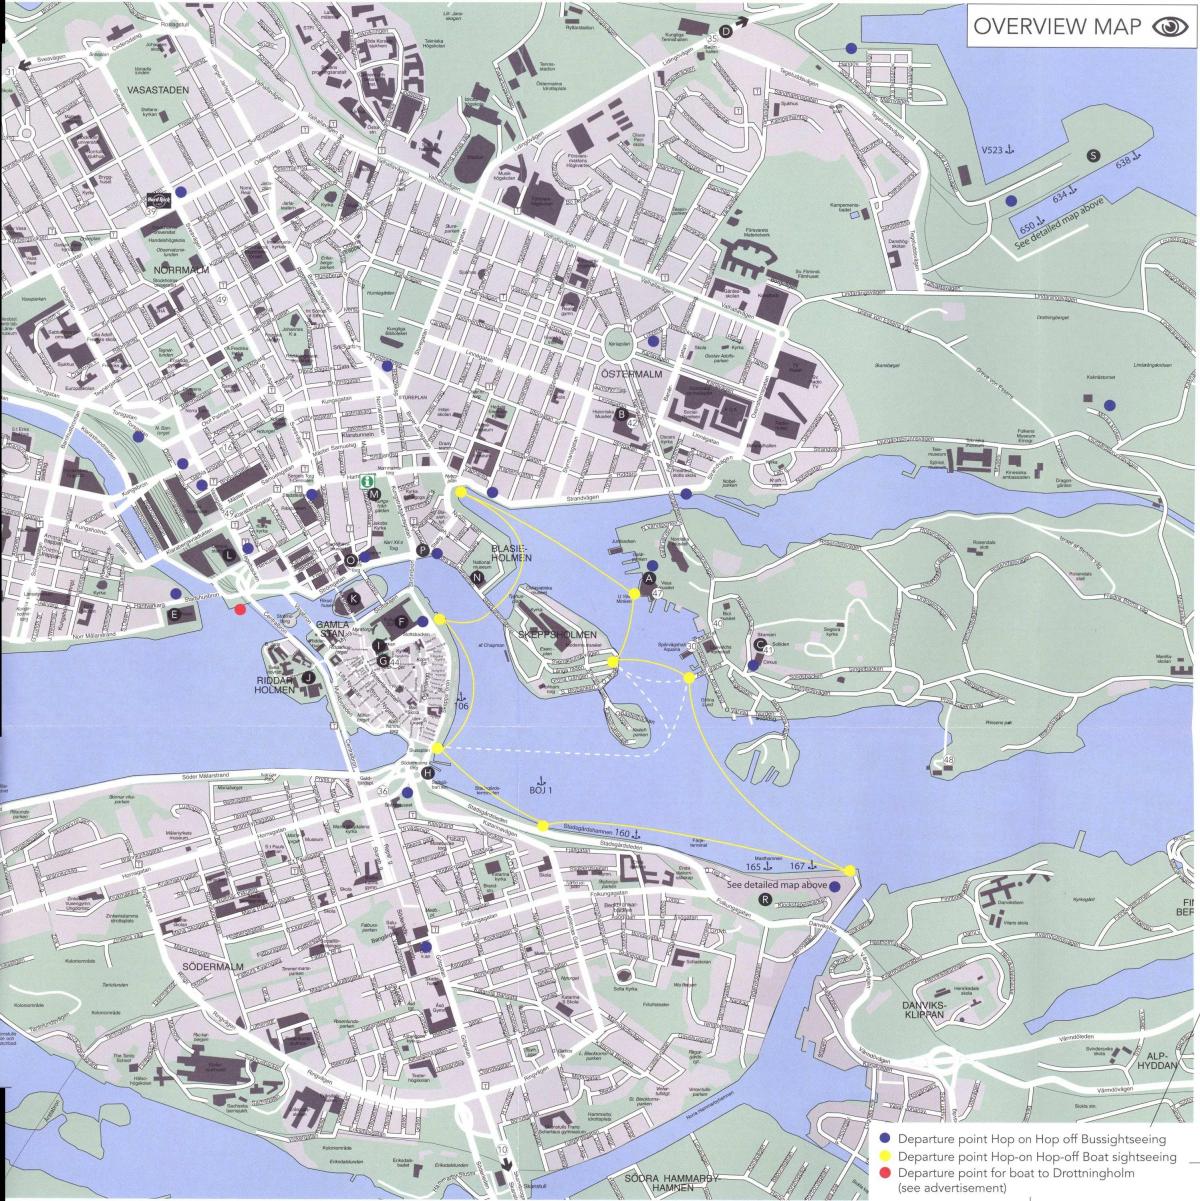 kort over Stockholm centrum